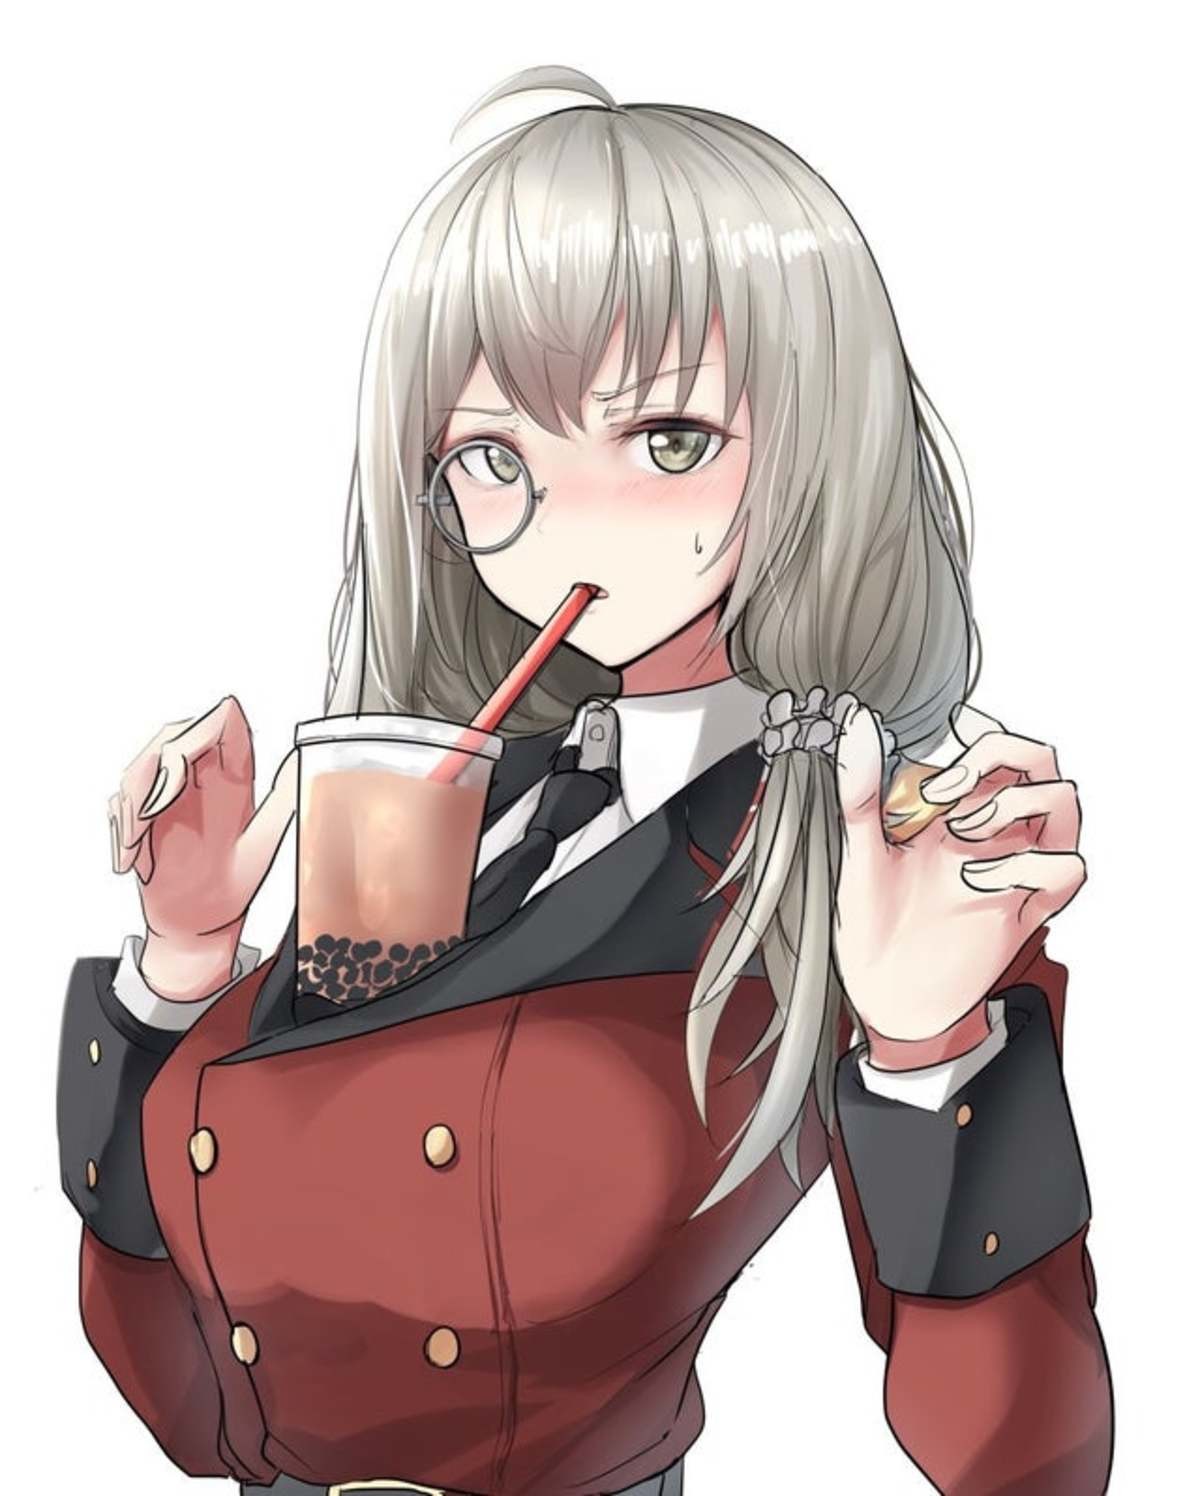 Smug Anime Girl Drinking Tea